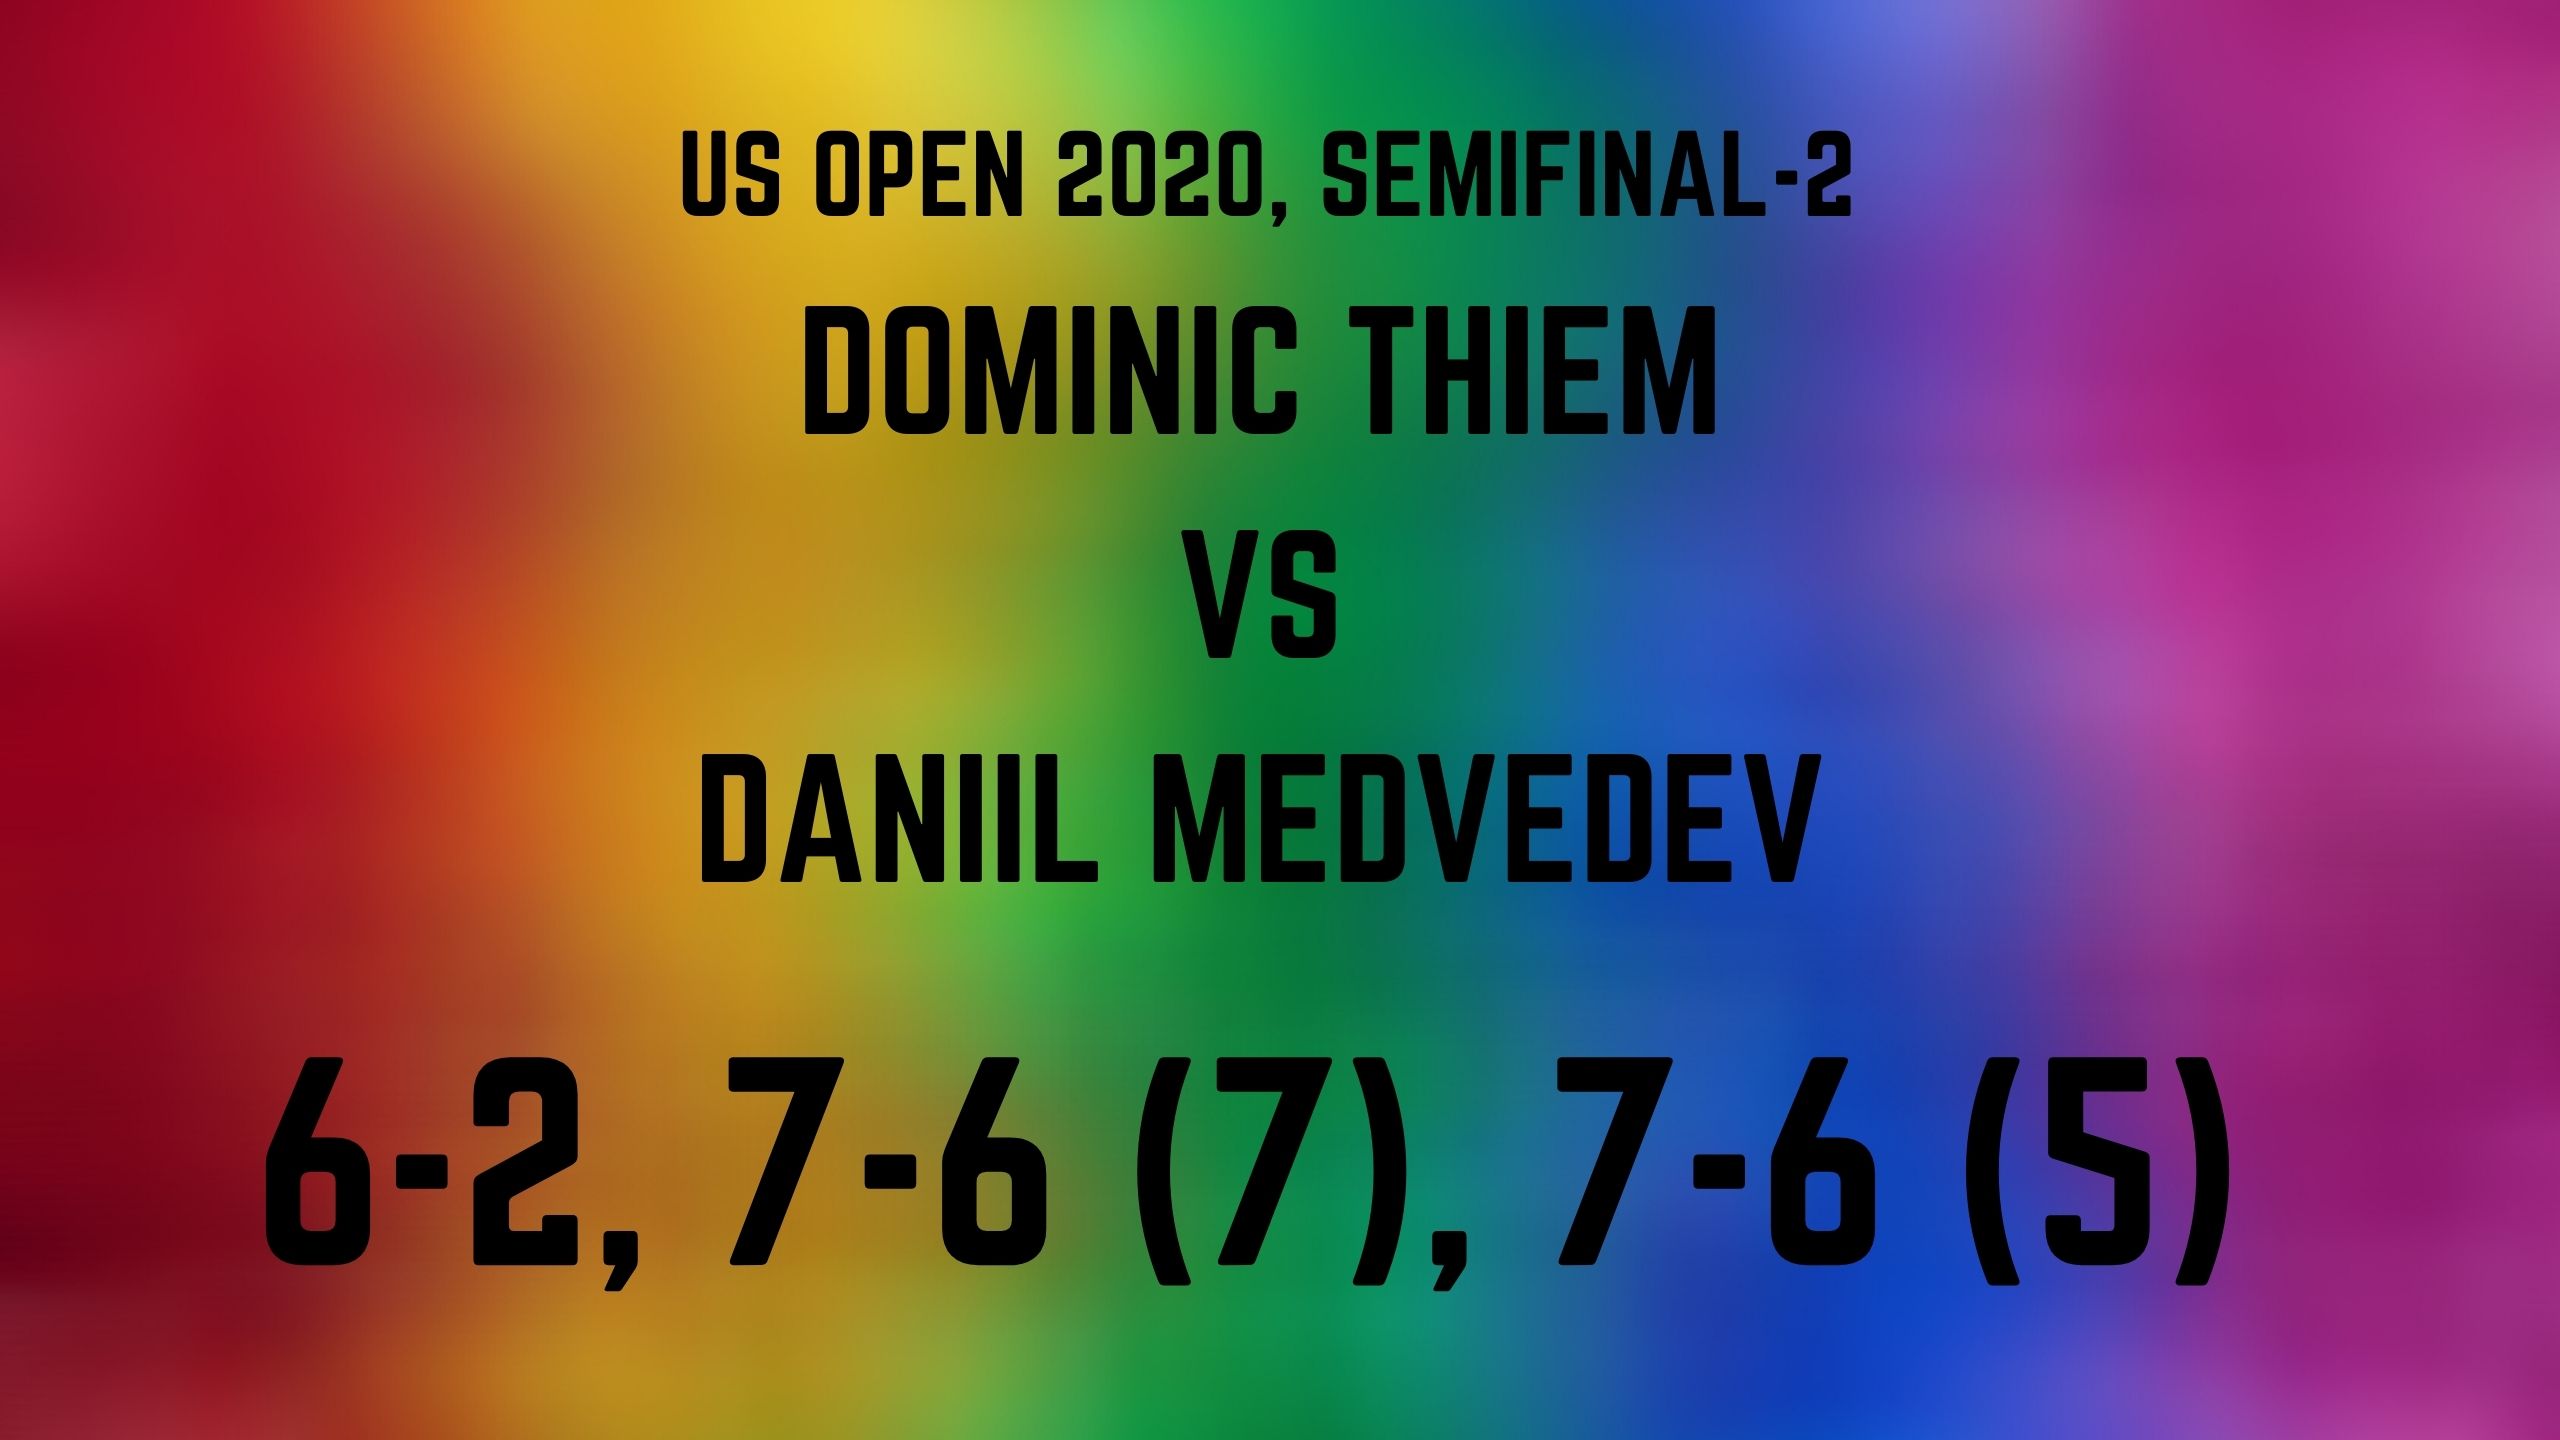 Dominic Thiem,  US Open final,  Daniil Medvedev,  Alexander Zverev,  Dominic Thiem defeats Daniil Medvedev,  ପୁରୁଷ ଏକକ ଫାଇନାଲରେ ଡୋମିନିକ ଥିମ,  ୟୁଏସ ଓପନ ଫାଇନାଲ,  ଡାନିଲ ମେଡଭେଡେଭ ପରାଜିତ